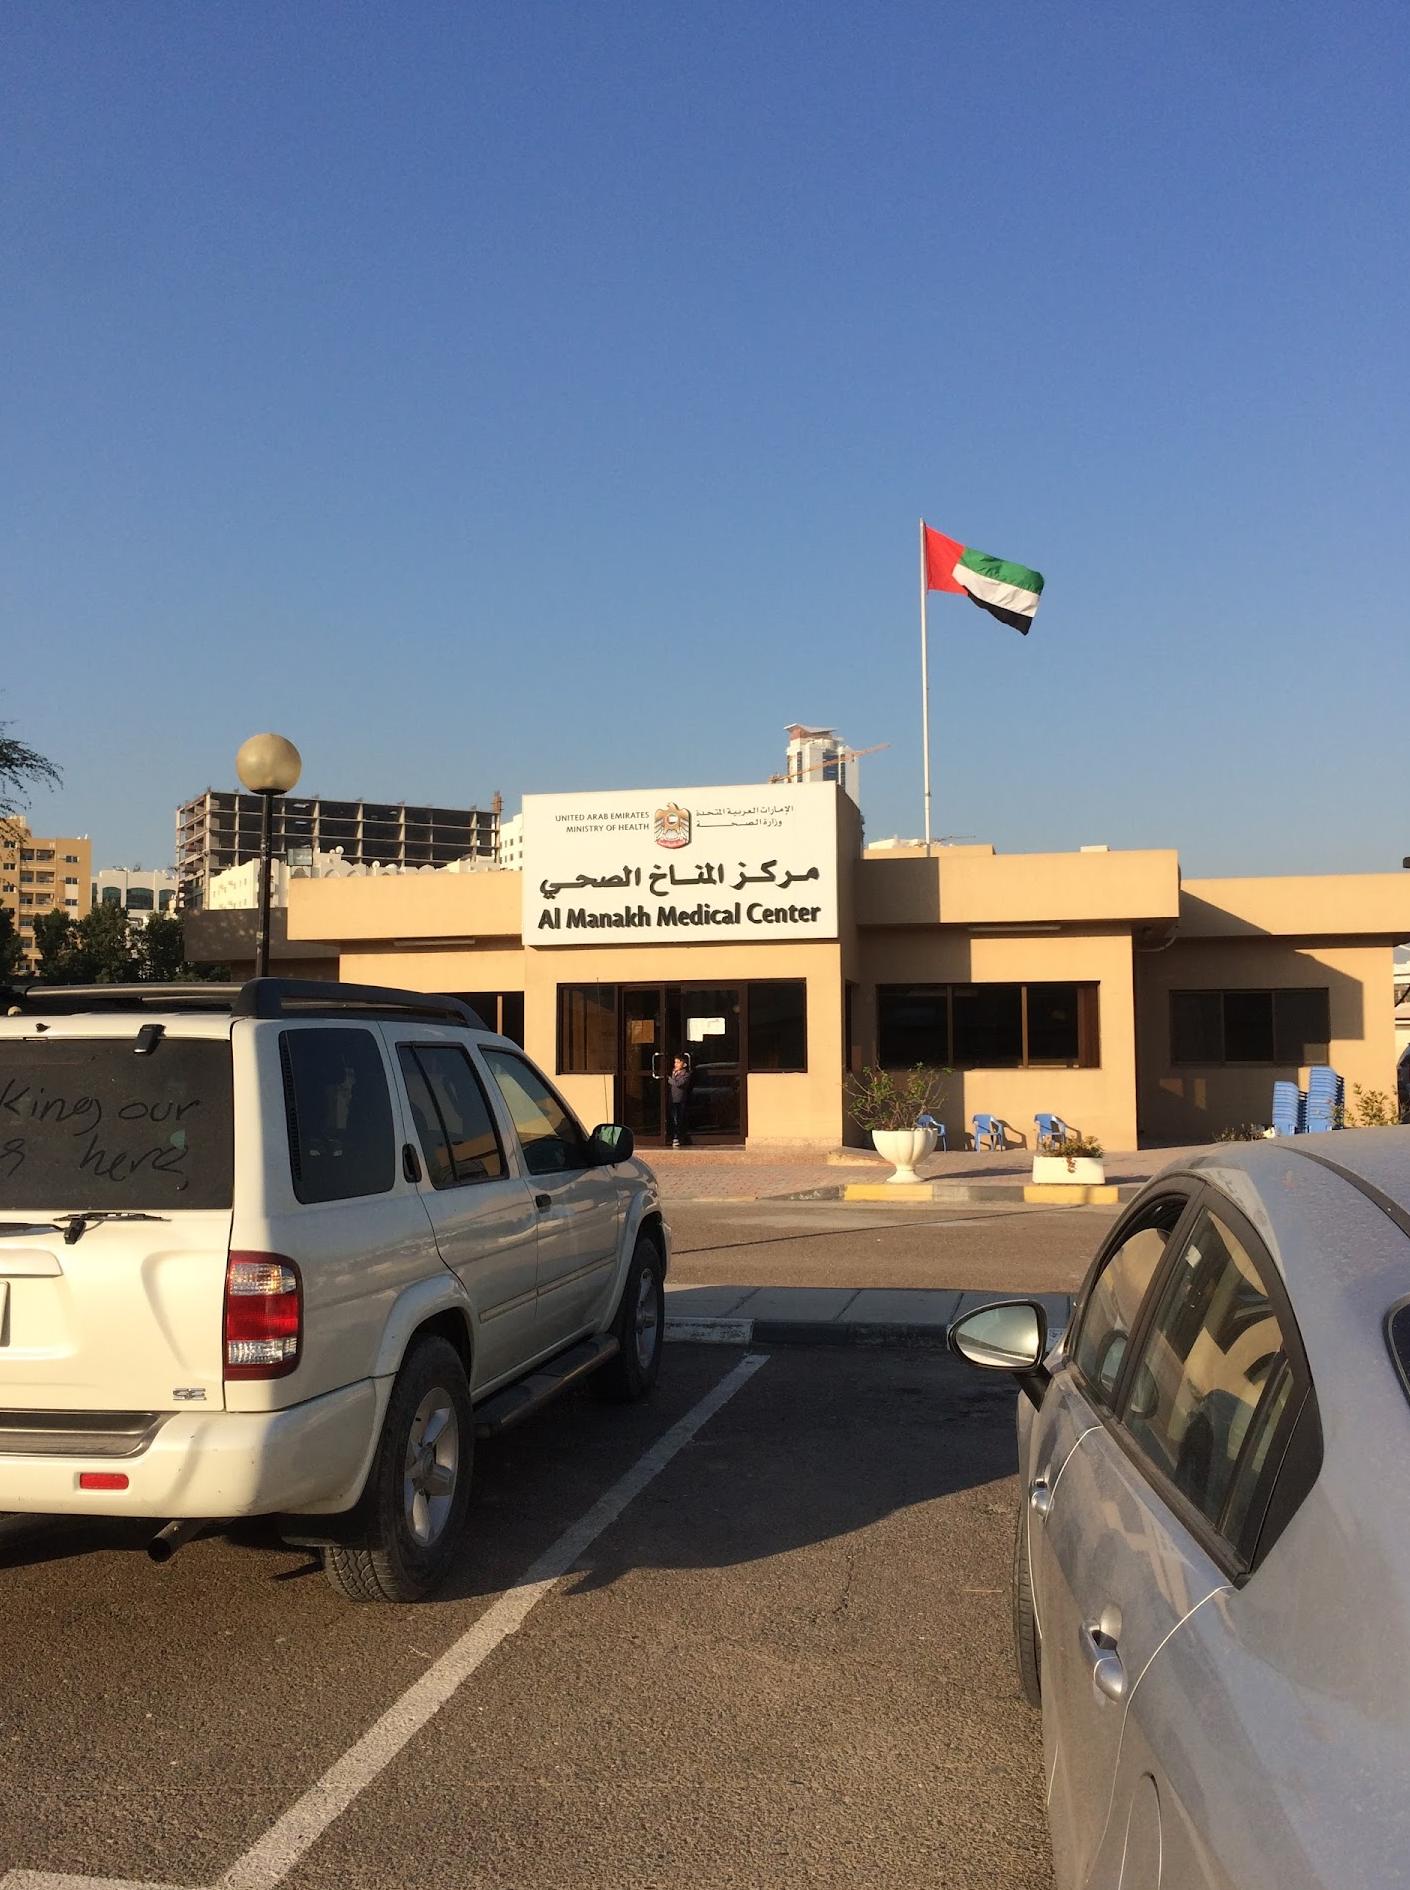 Al Manakh Medical Center